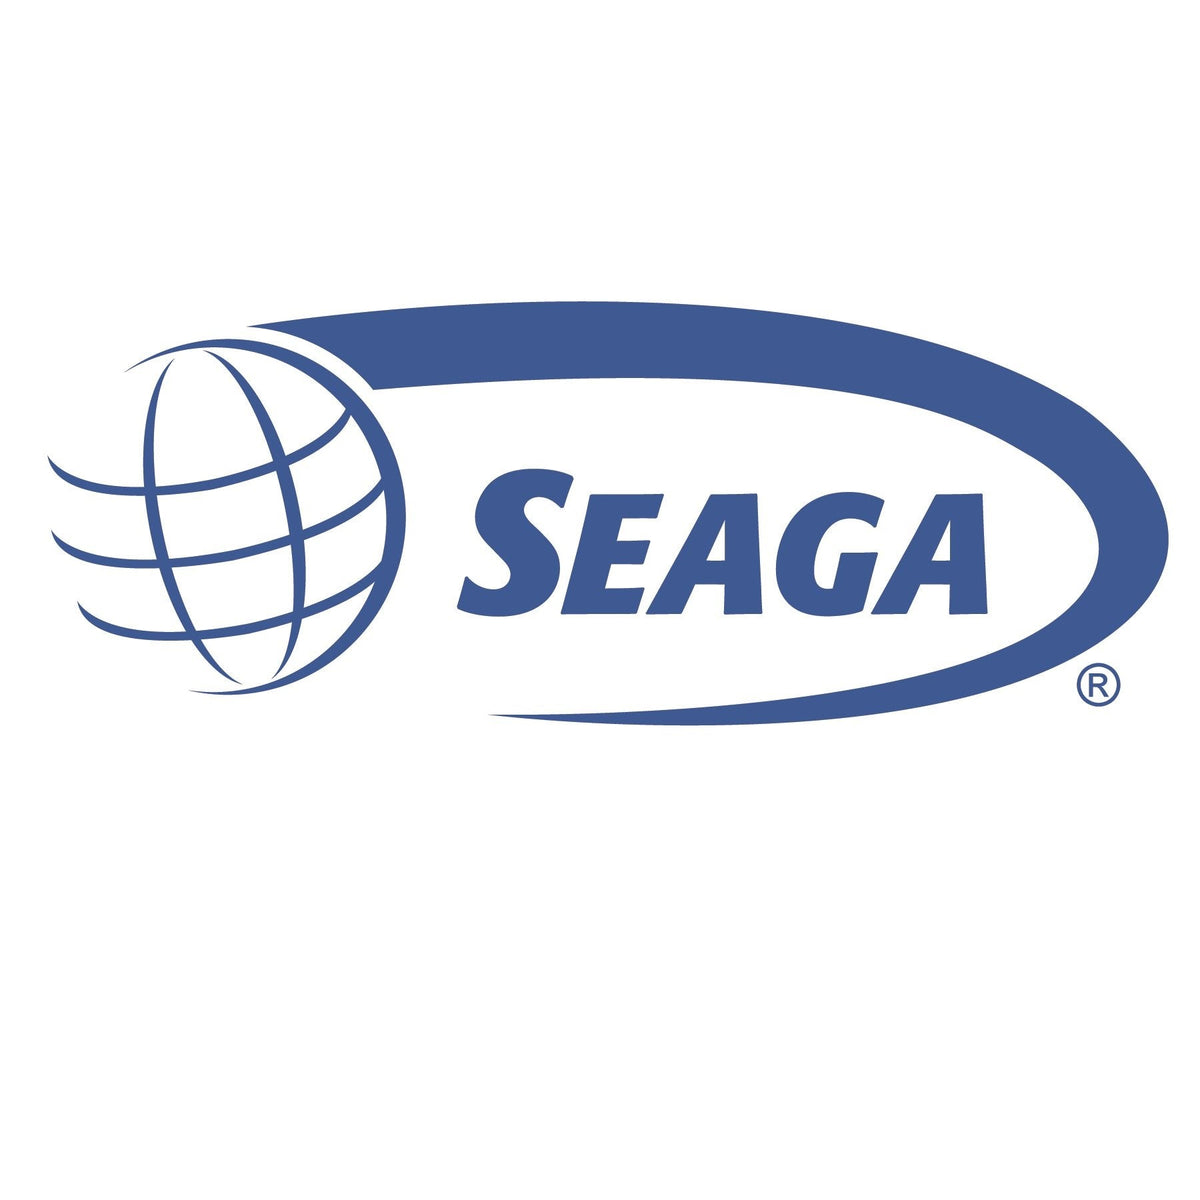 Seaga Manufacturing Inc. - Seaga Manufacturing